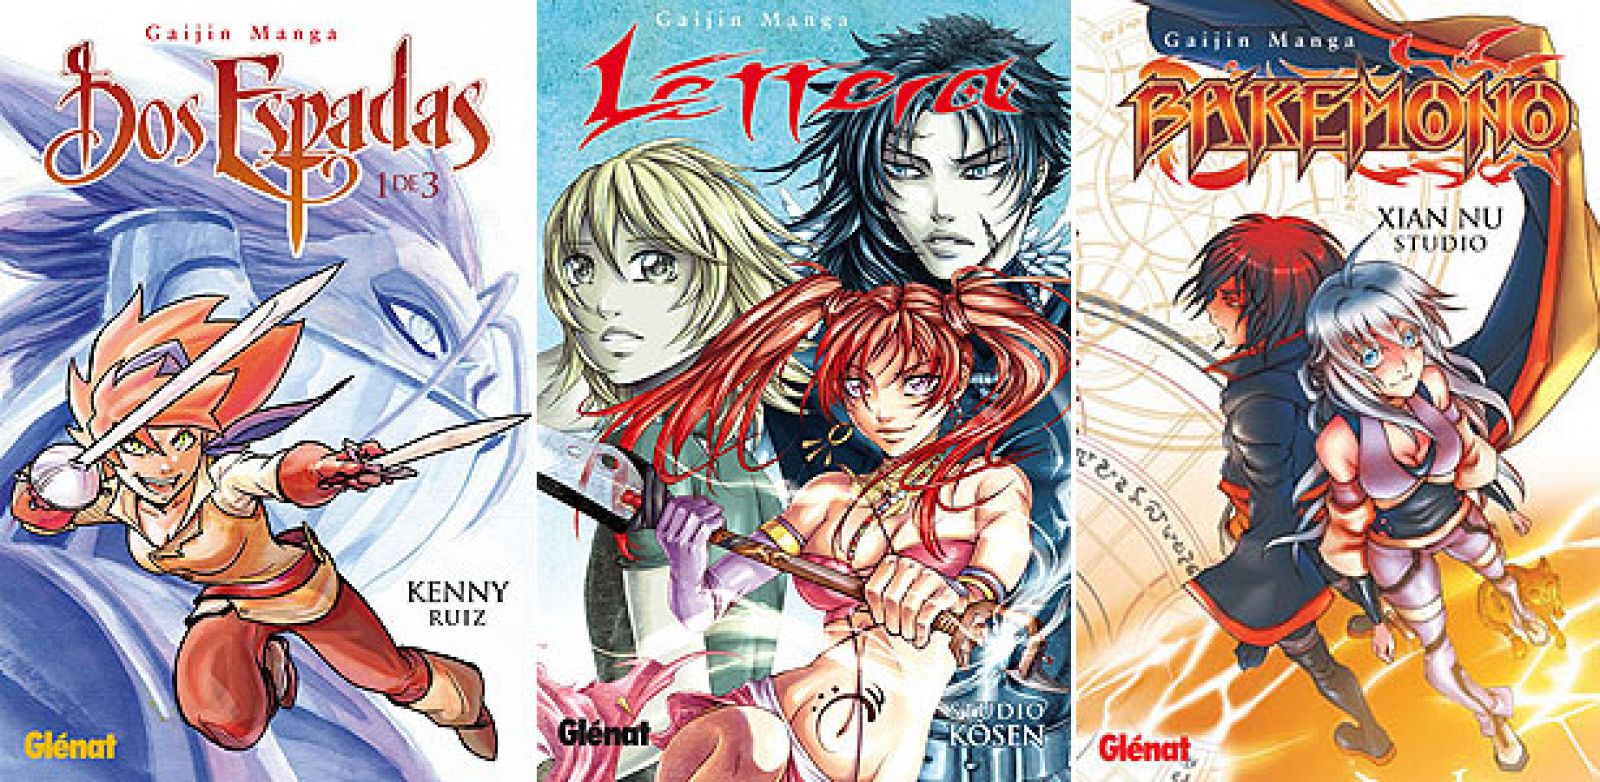 'Dos espadas', 'Lettera' y 'Bakemono', manga a la española